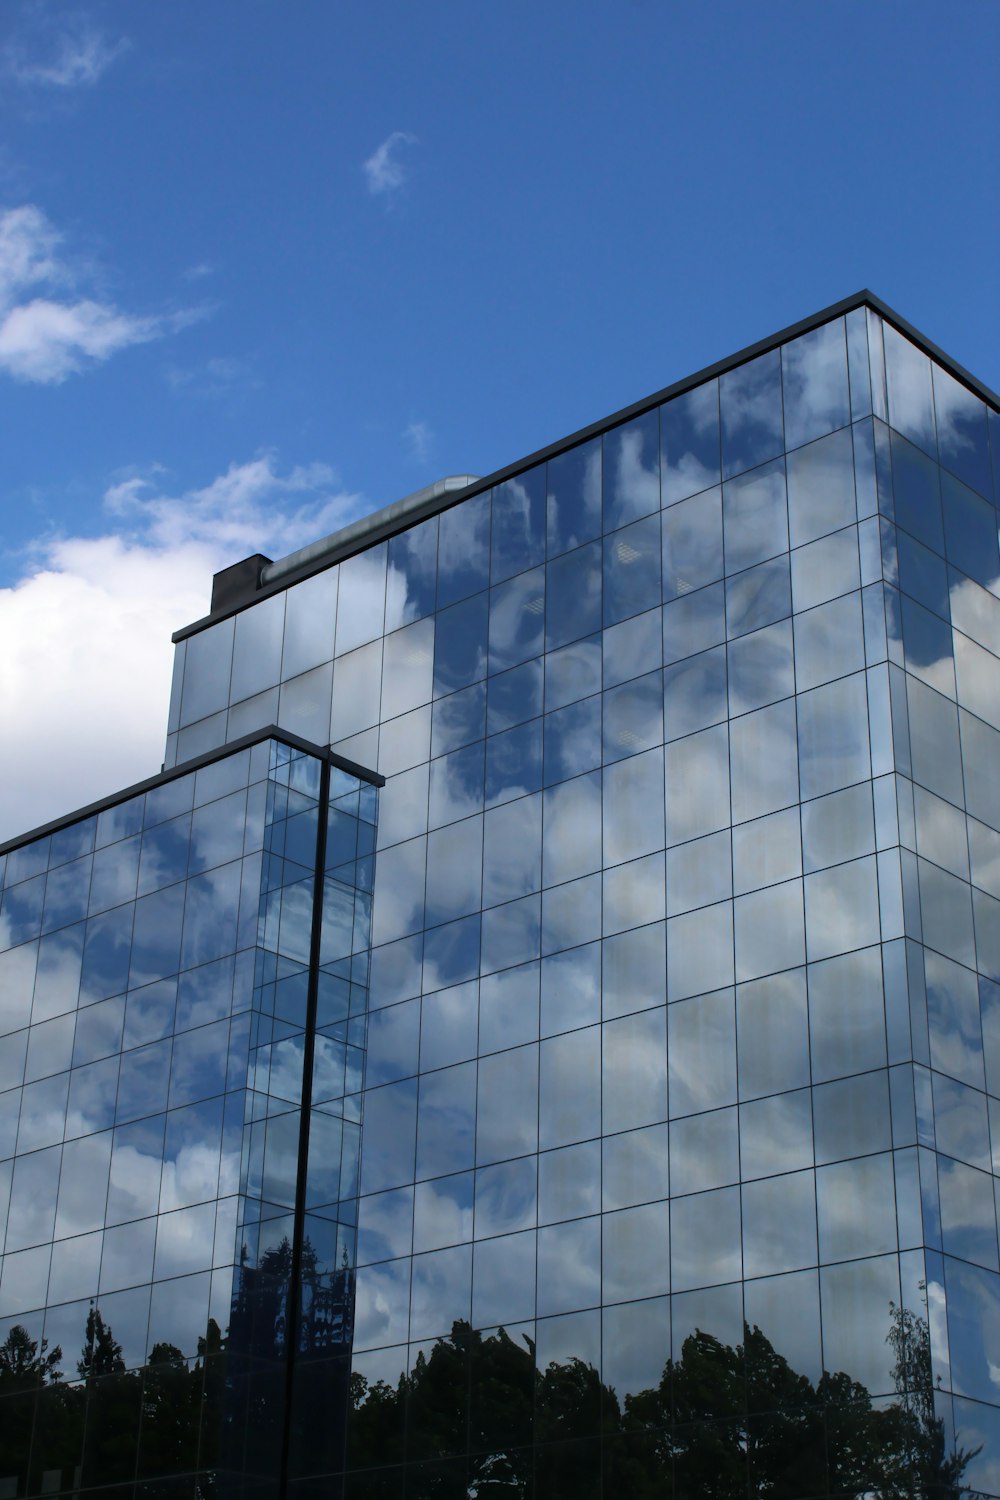 edificio de cristal azul y blanco bajo el cielo azul durante el día